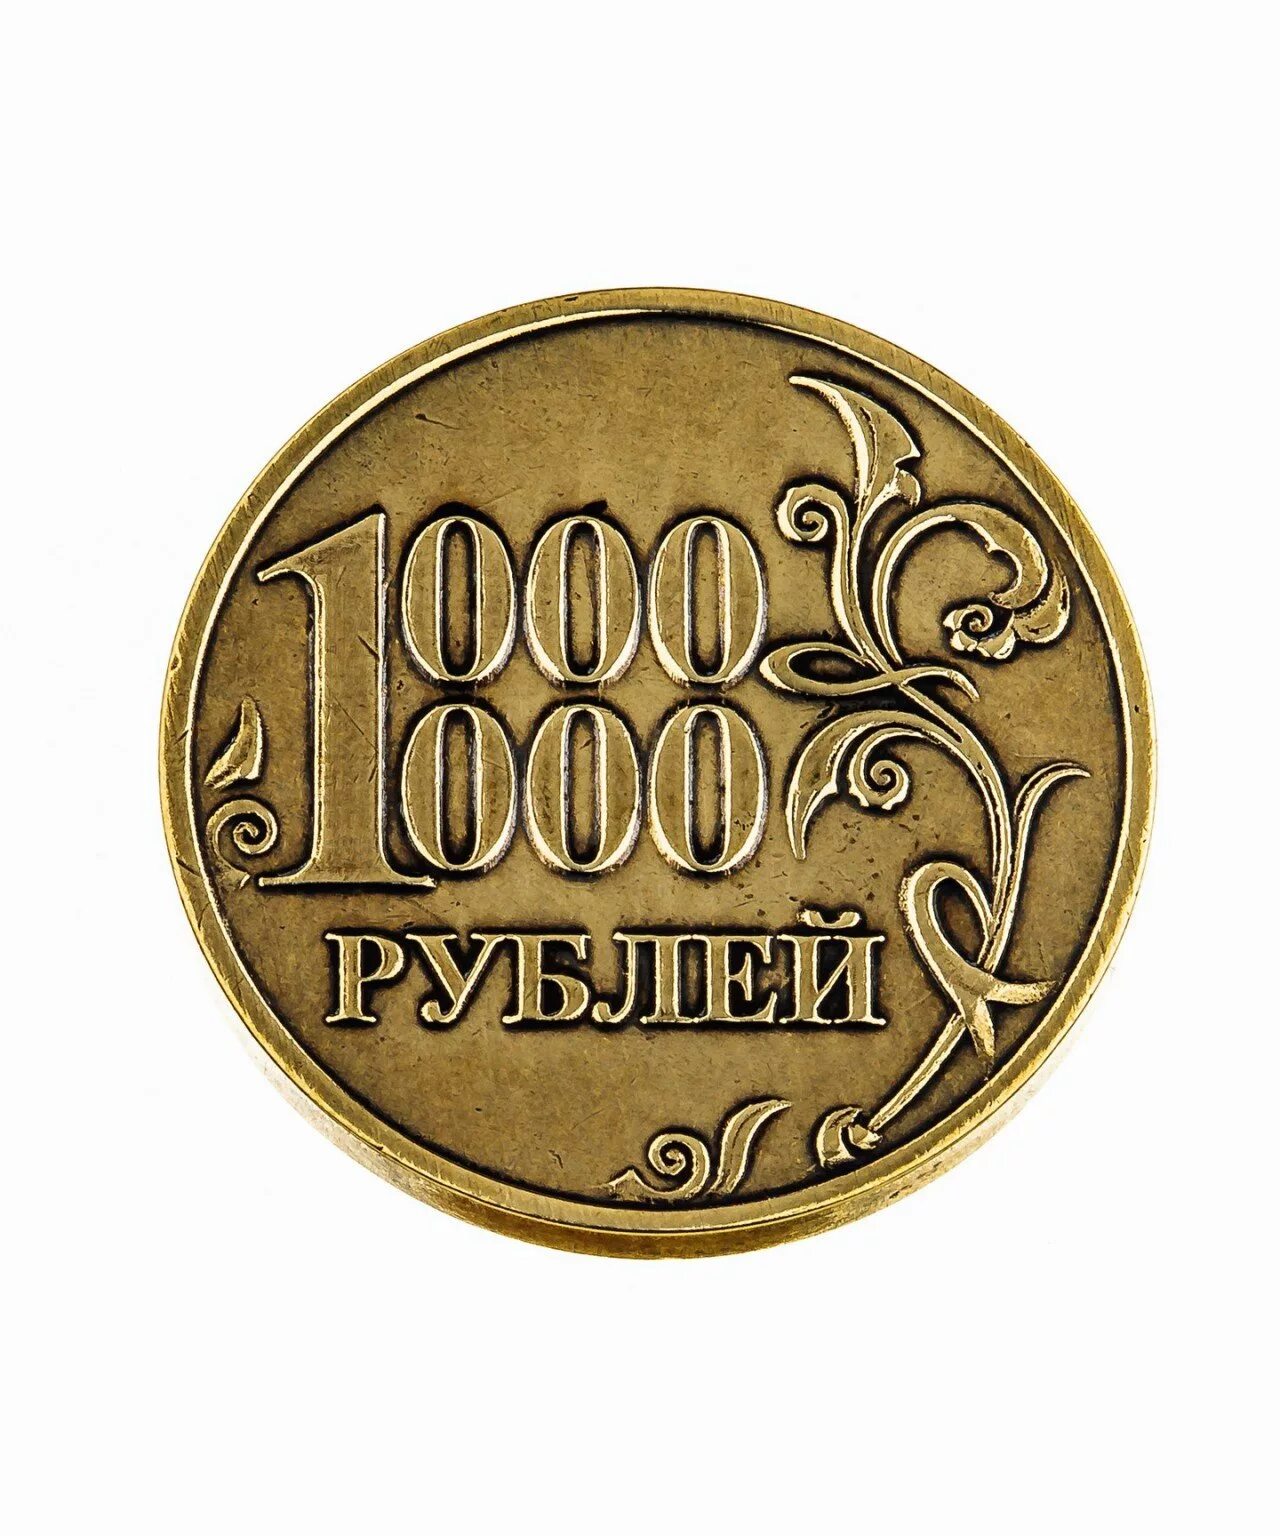 1000000 рублей б у. Монета миллион рублей. Монета 1 милион рубле й. Сонета 1 миллион рублей. Монета 1 миллион рублей.